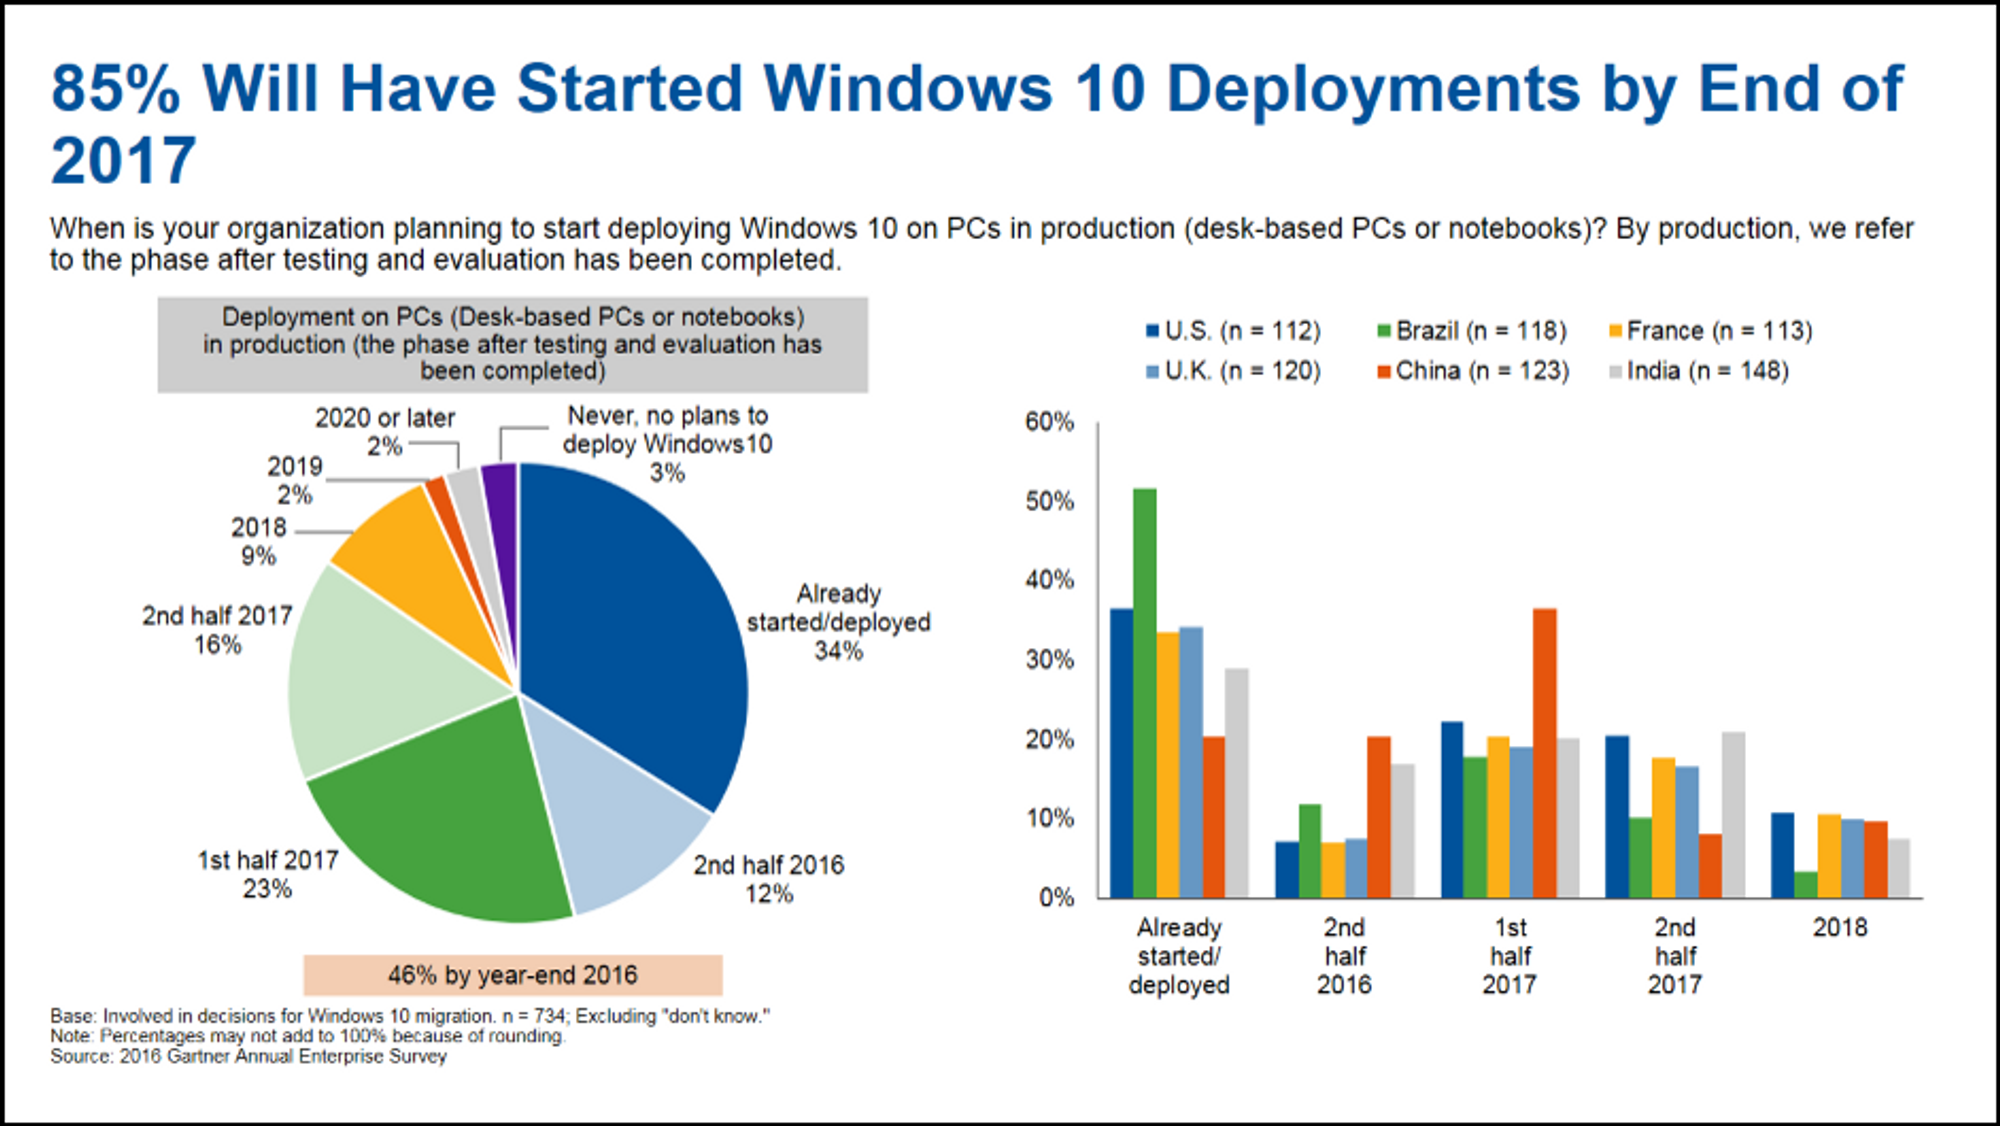 De fleste av virksomhetene er trolig allerede i gang med utrulling av Windows 10 til pc-er. Diagrammet bærer noe preg av at det er basert på svar som ble oppgitt i andre halvdel av 2016.